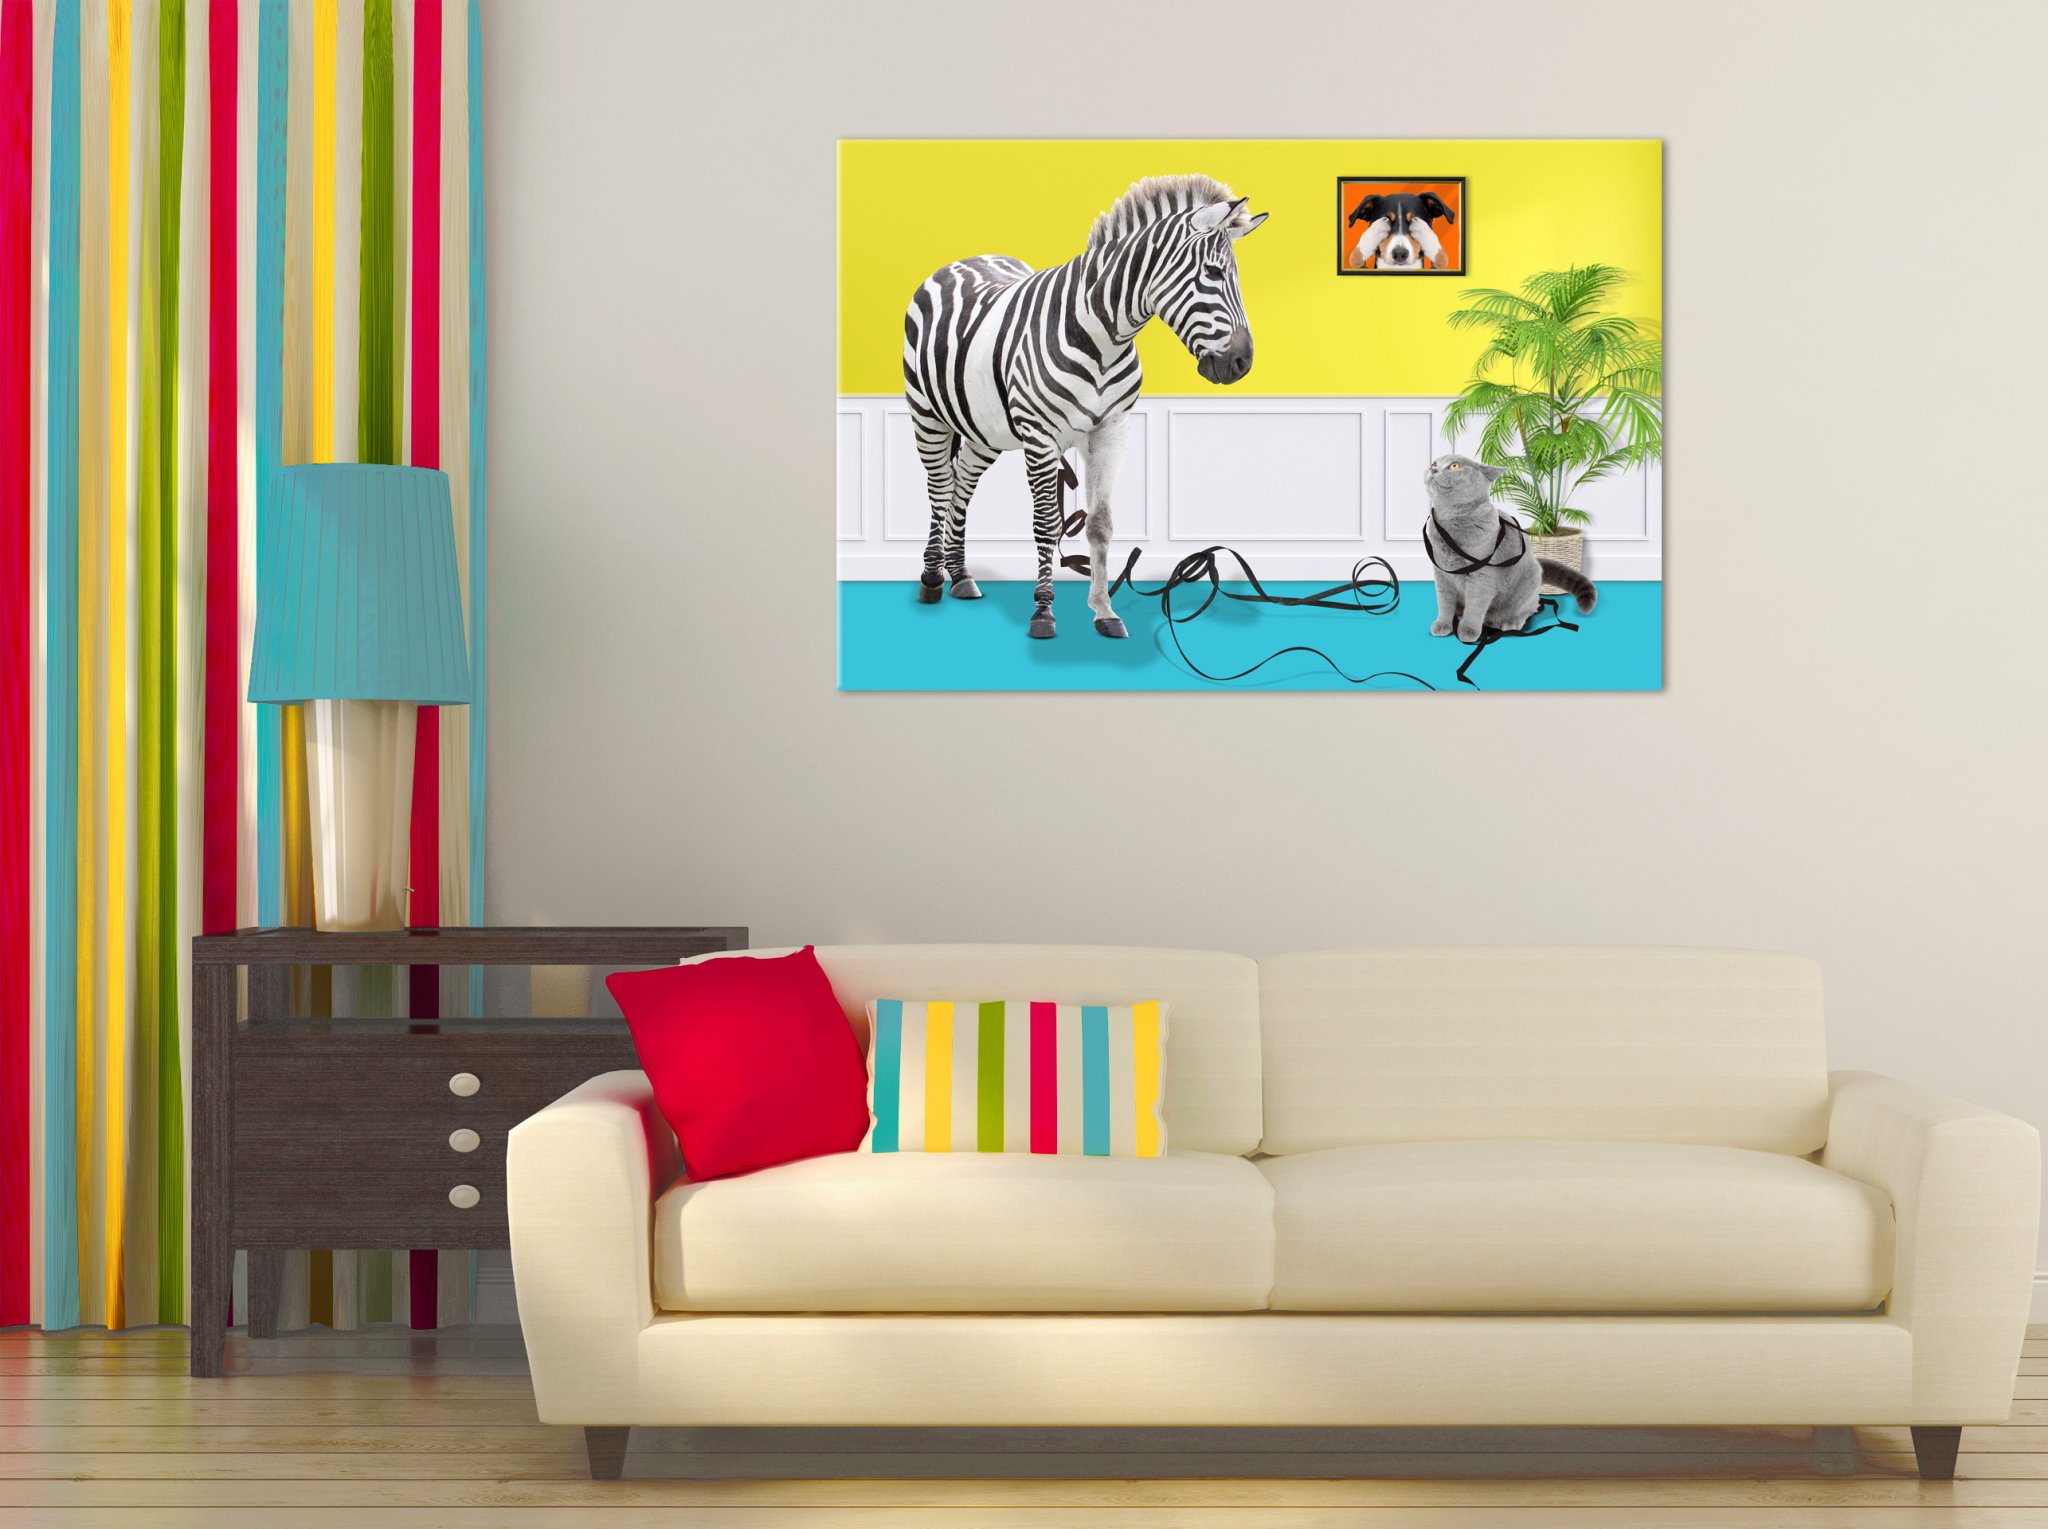 Kreative Bildbearbeitung Composing Artwork zeigt eine Katze die beim Spielen einem Zebra die schwarzen Streifen abwickelt im Wohnbeispiel.